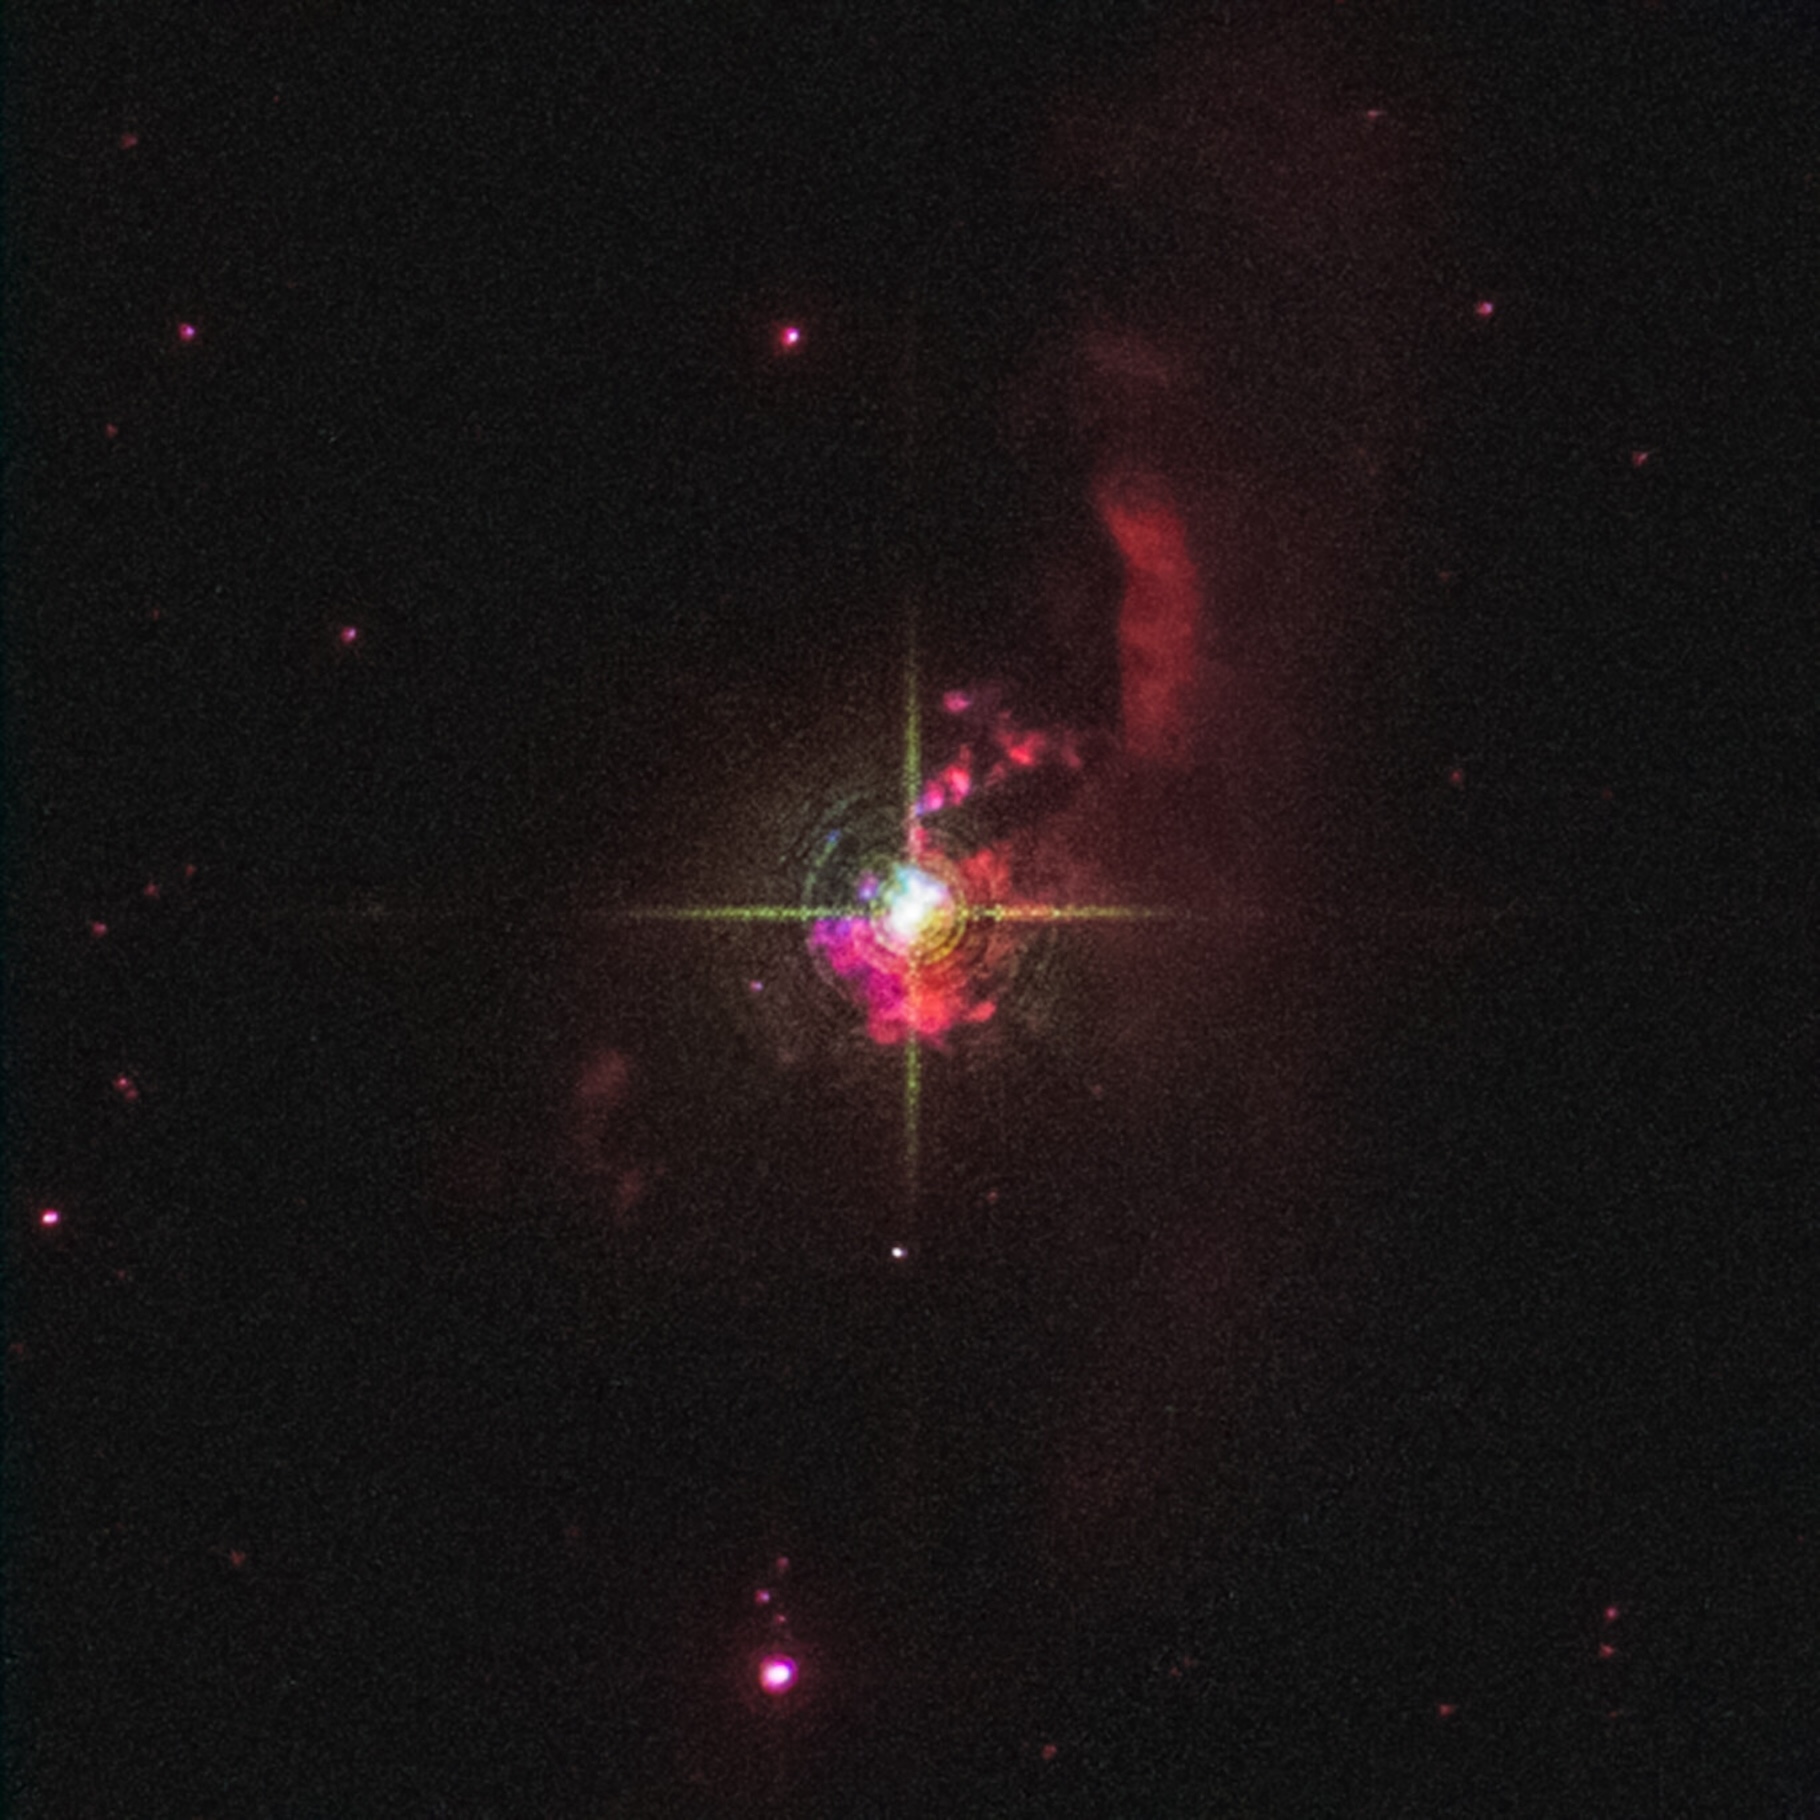 Grâce au télescope spatial Hubble, des astronomes ont posé un regard nouveau sur l’étoile symbiotique Mira HM Sge. © Nasa, ESA, R. Sankrit (STScI), S. Goldman (STScI), J. DePasquale (STScI)